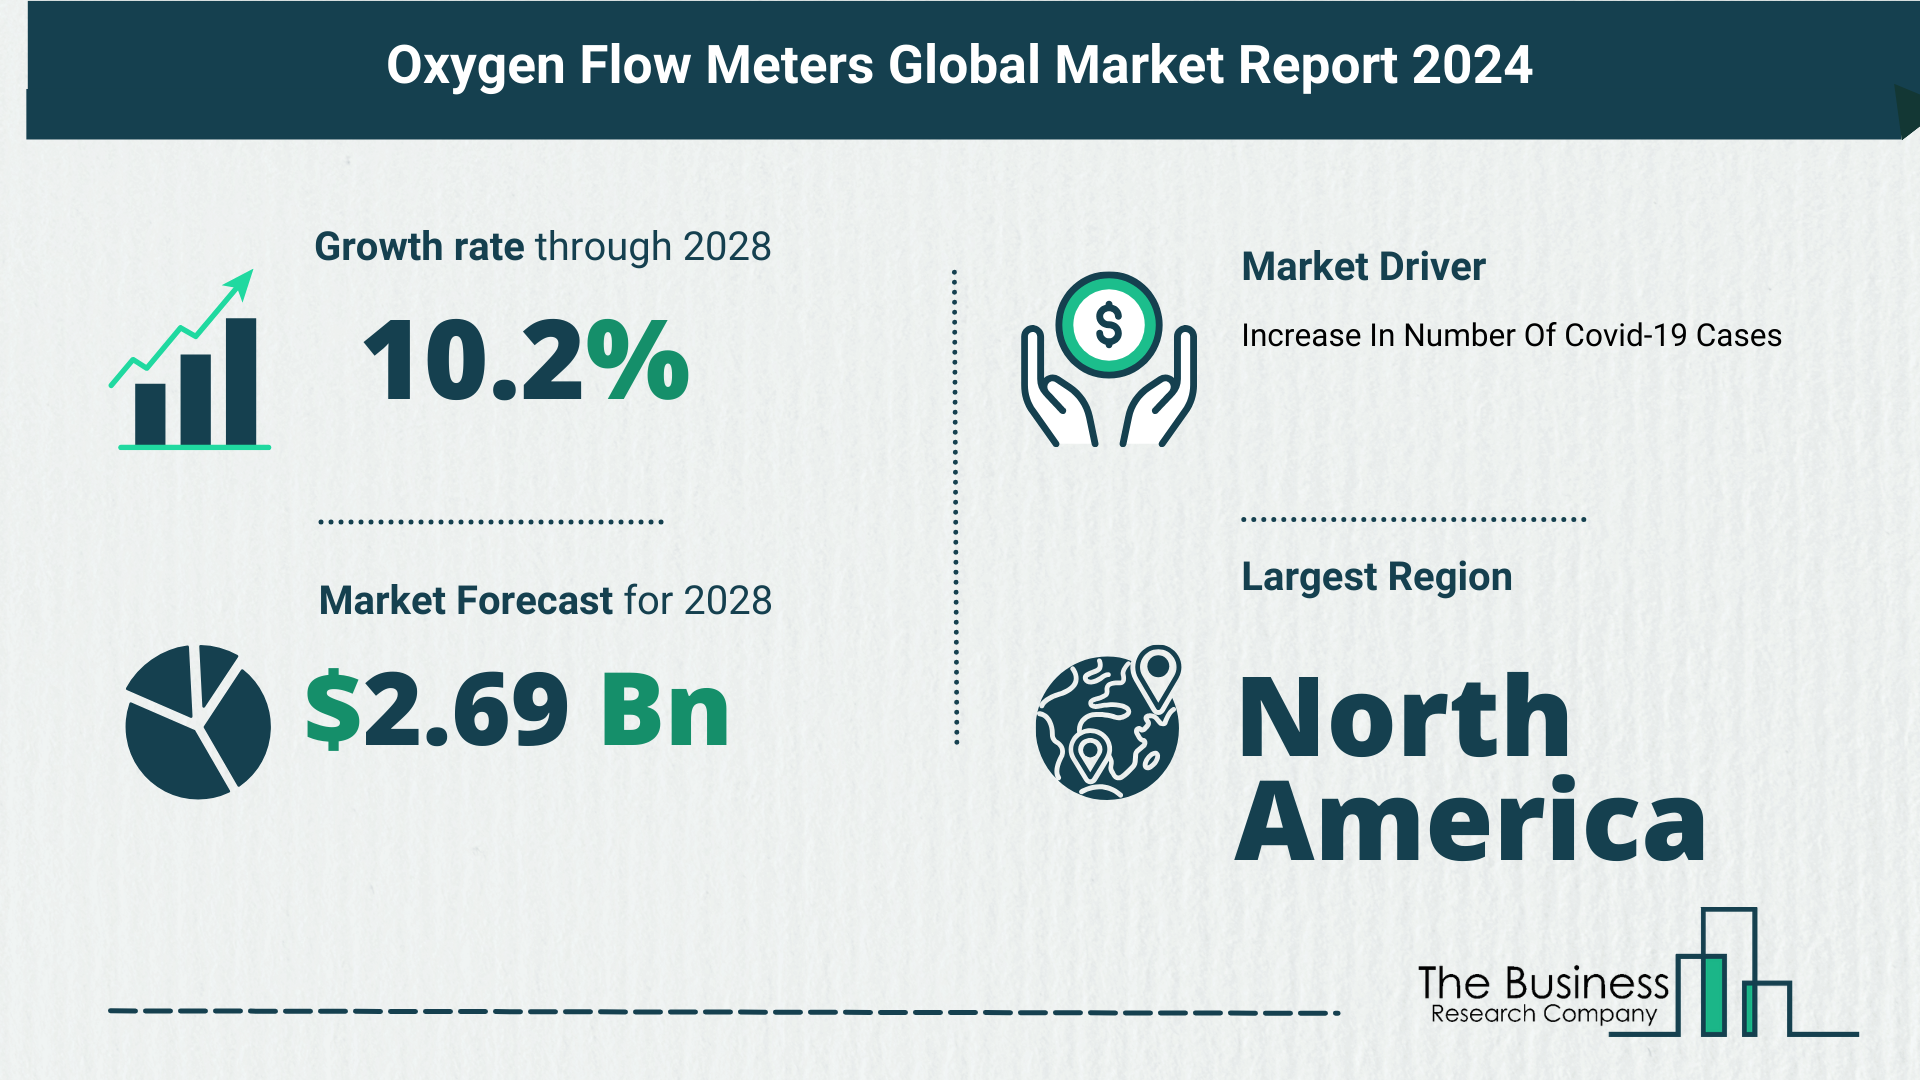 Key Takeaways From The Global Oxygen Flow Meters Market Forecast 2024